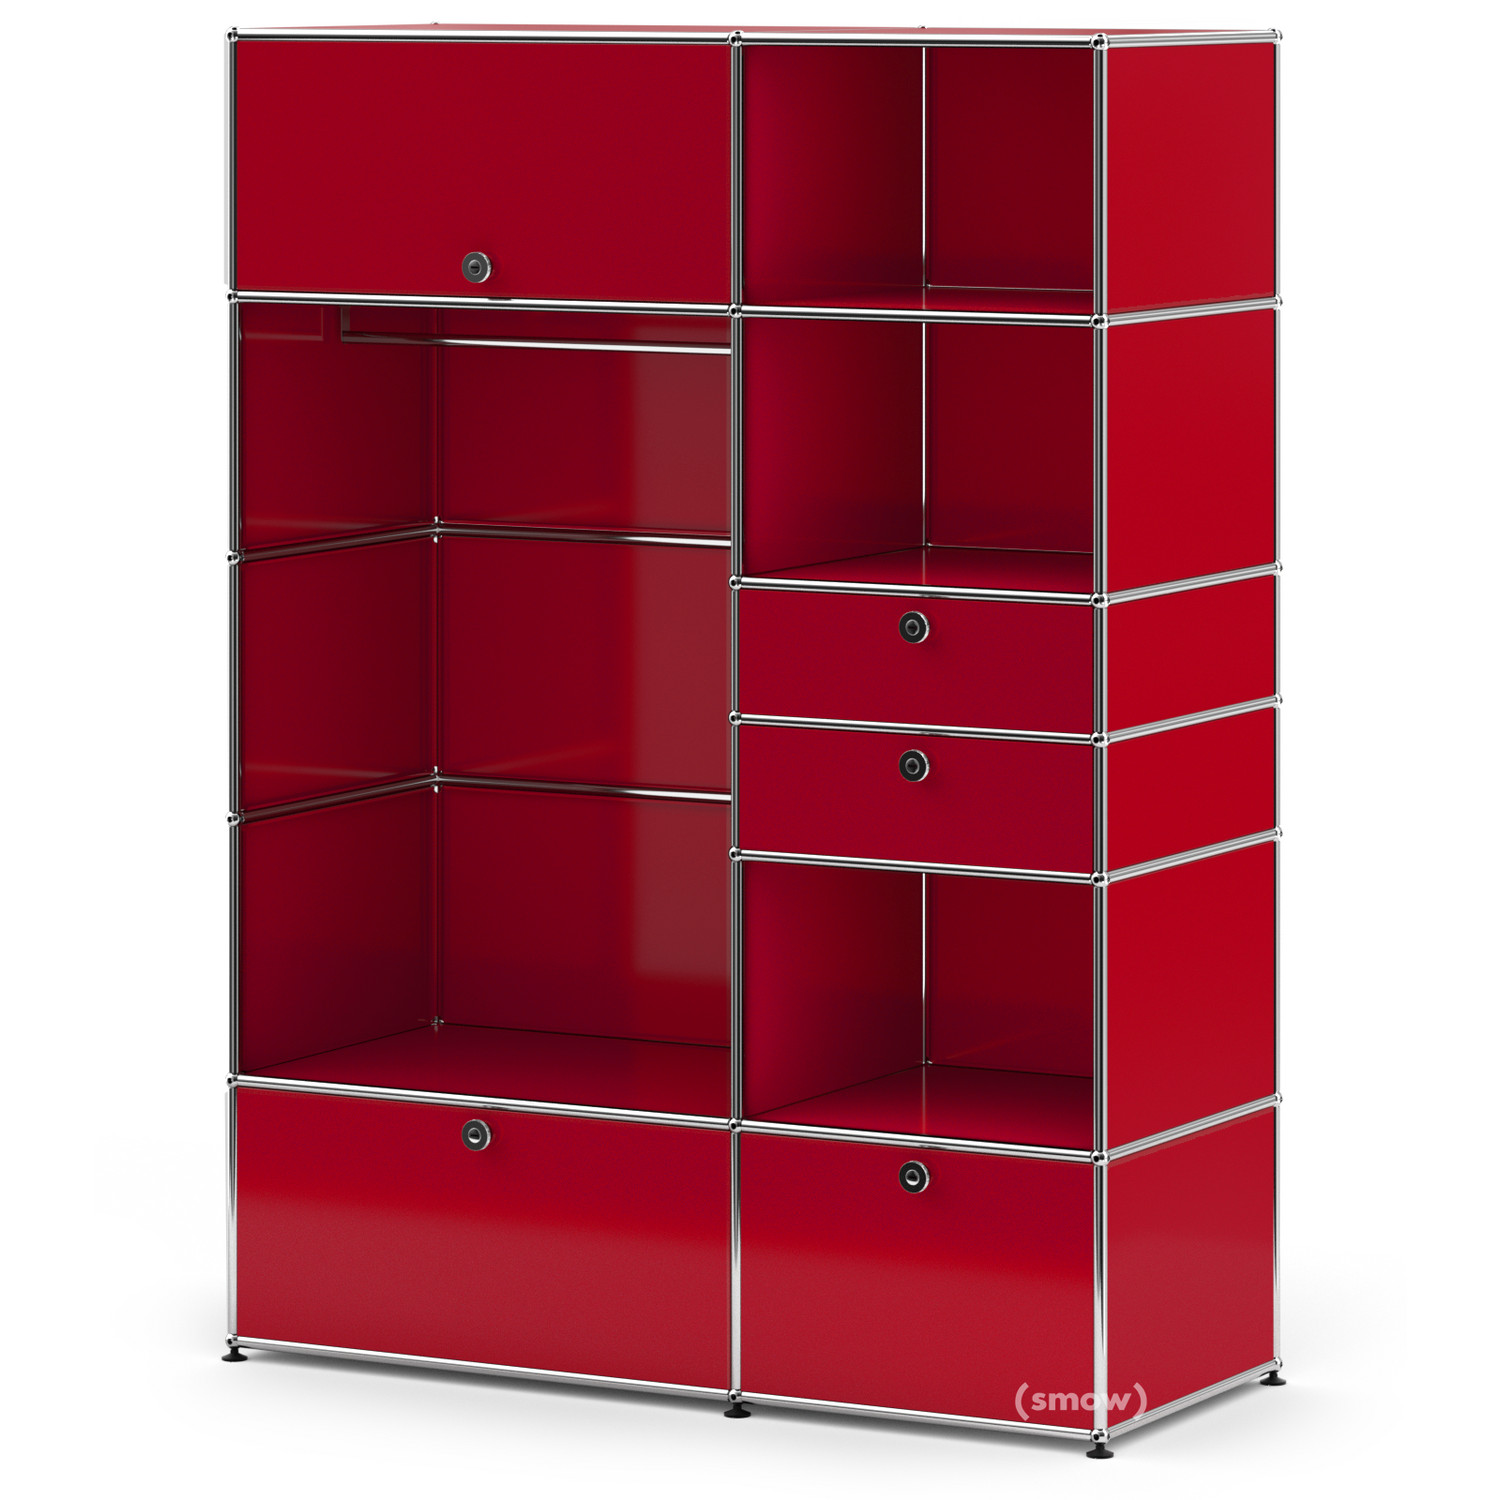 USM ruby Model USM from | I, - Haller Haller Designer furniture red Haller USM Wardrobes | Wardrobe USM